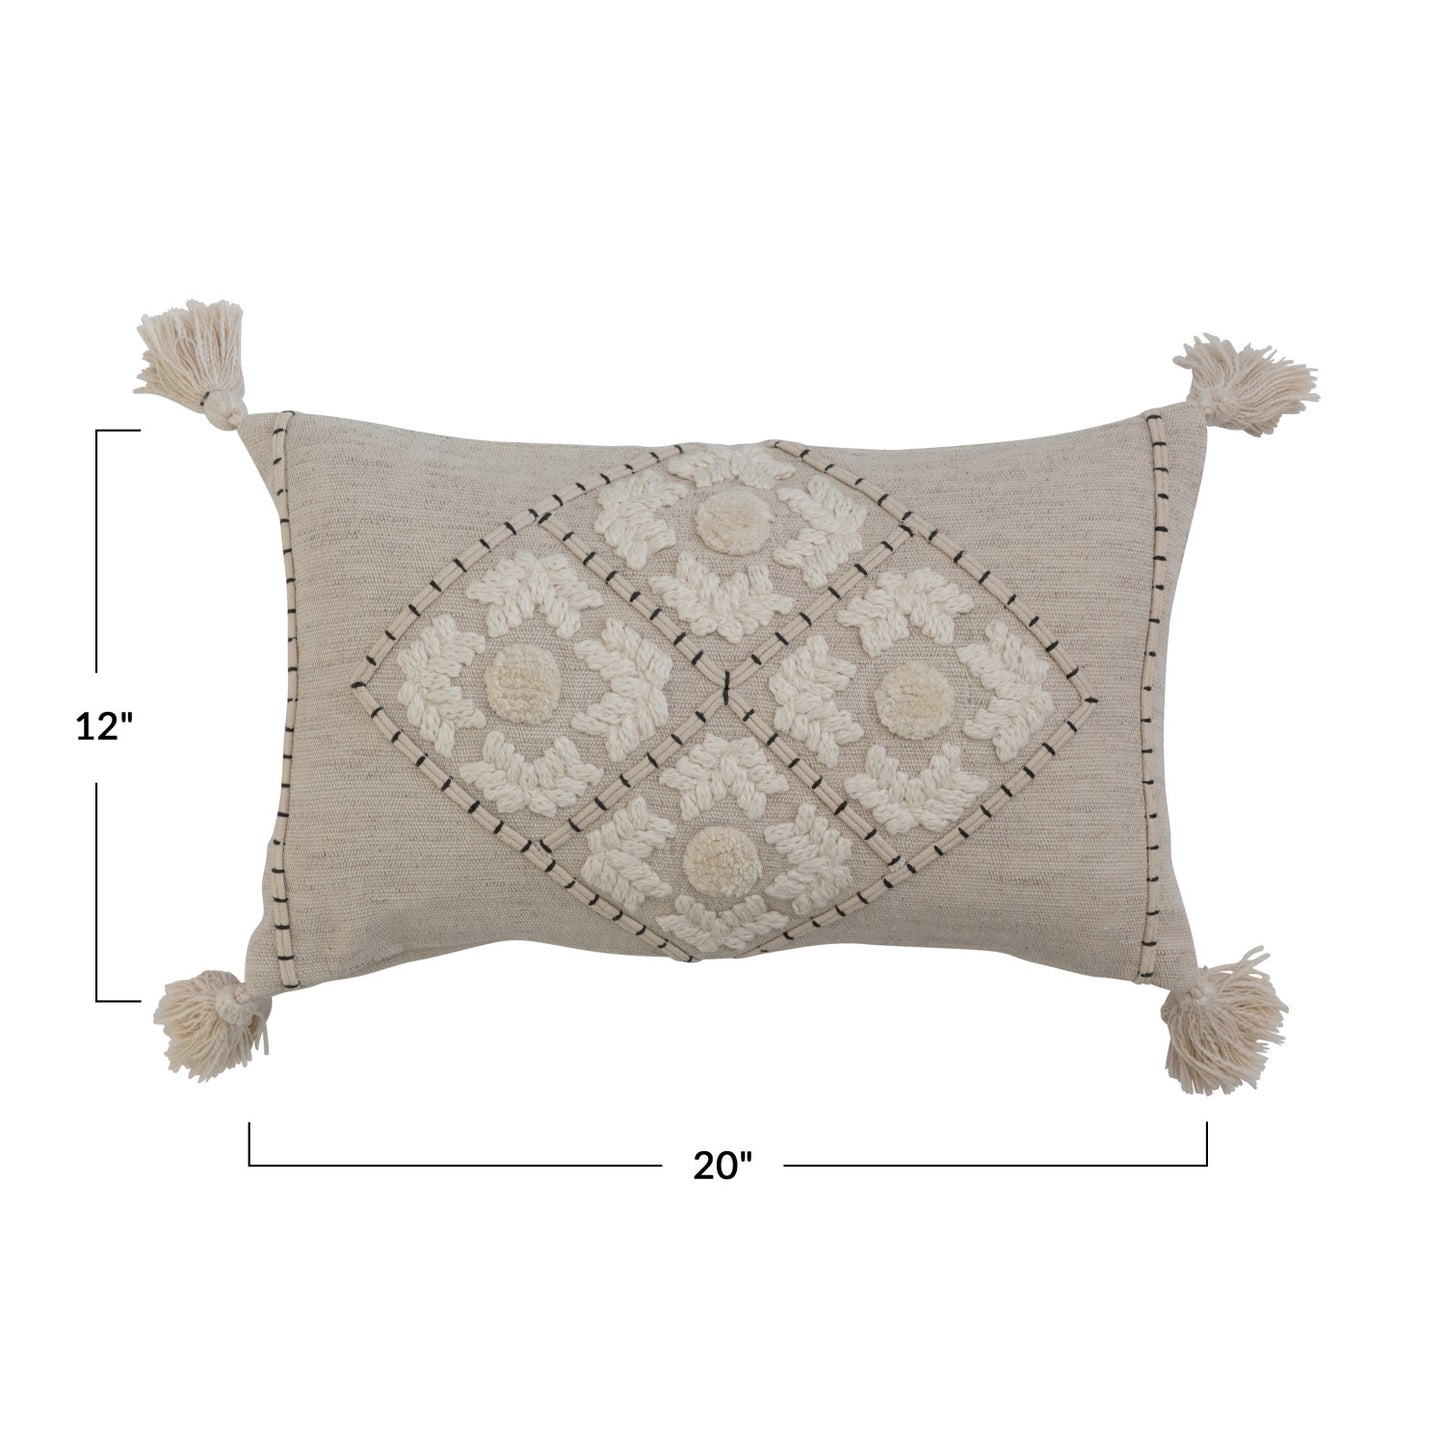 Mable Lumbar Pillow | 20"L x 12"W